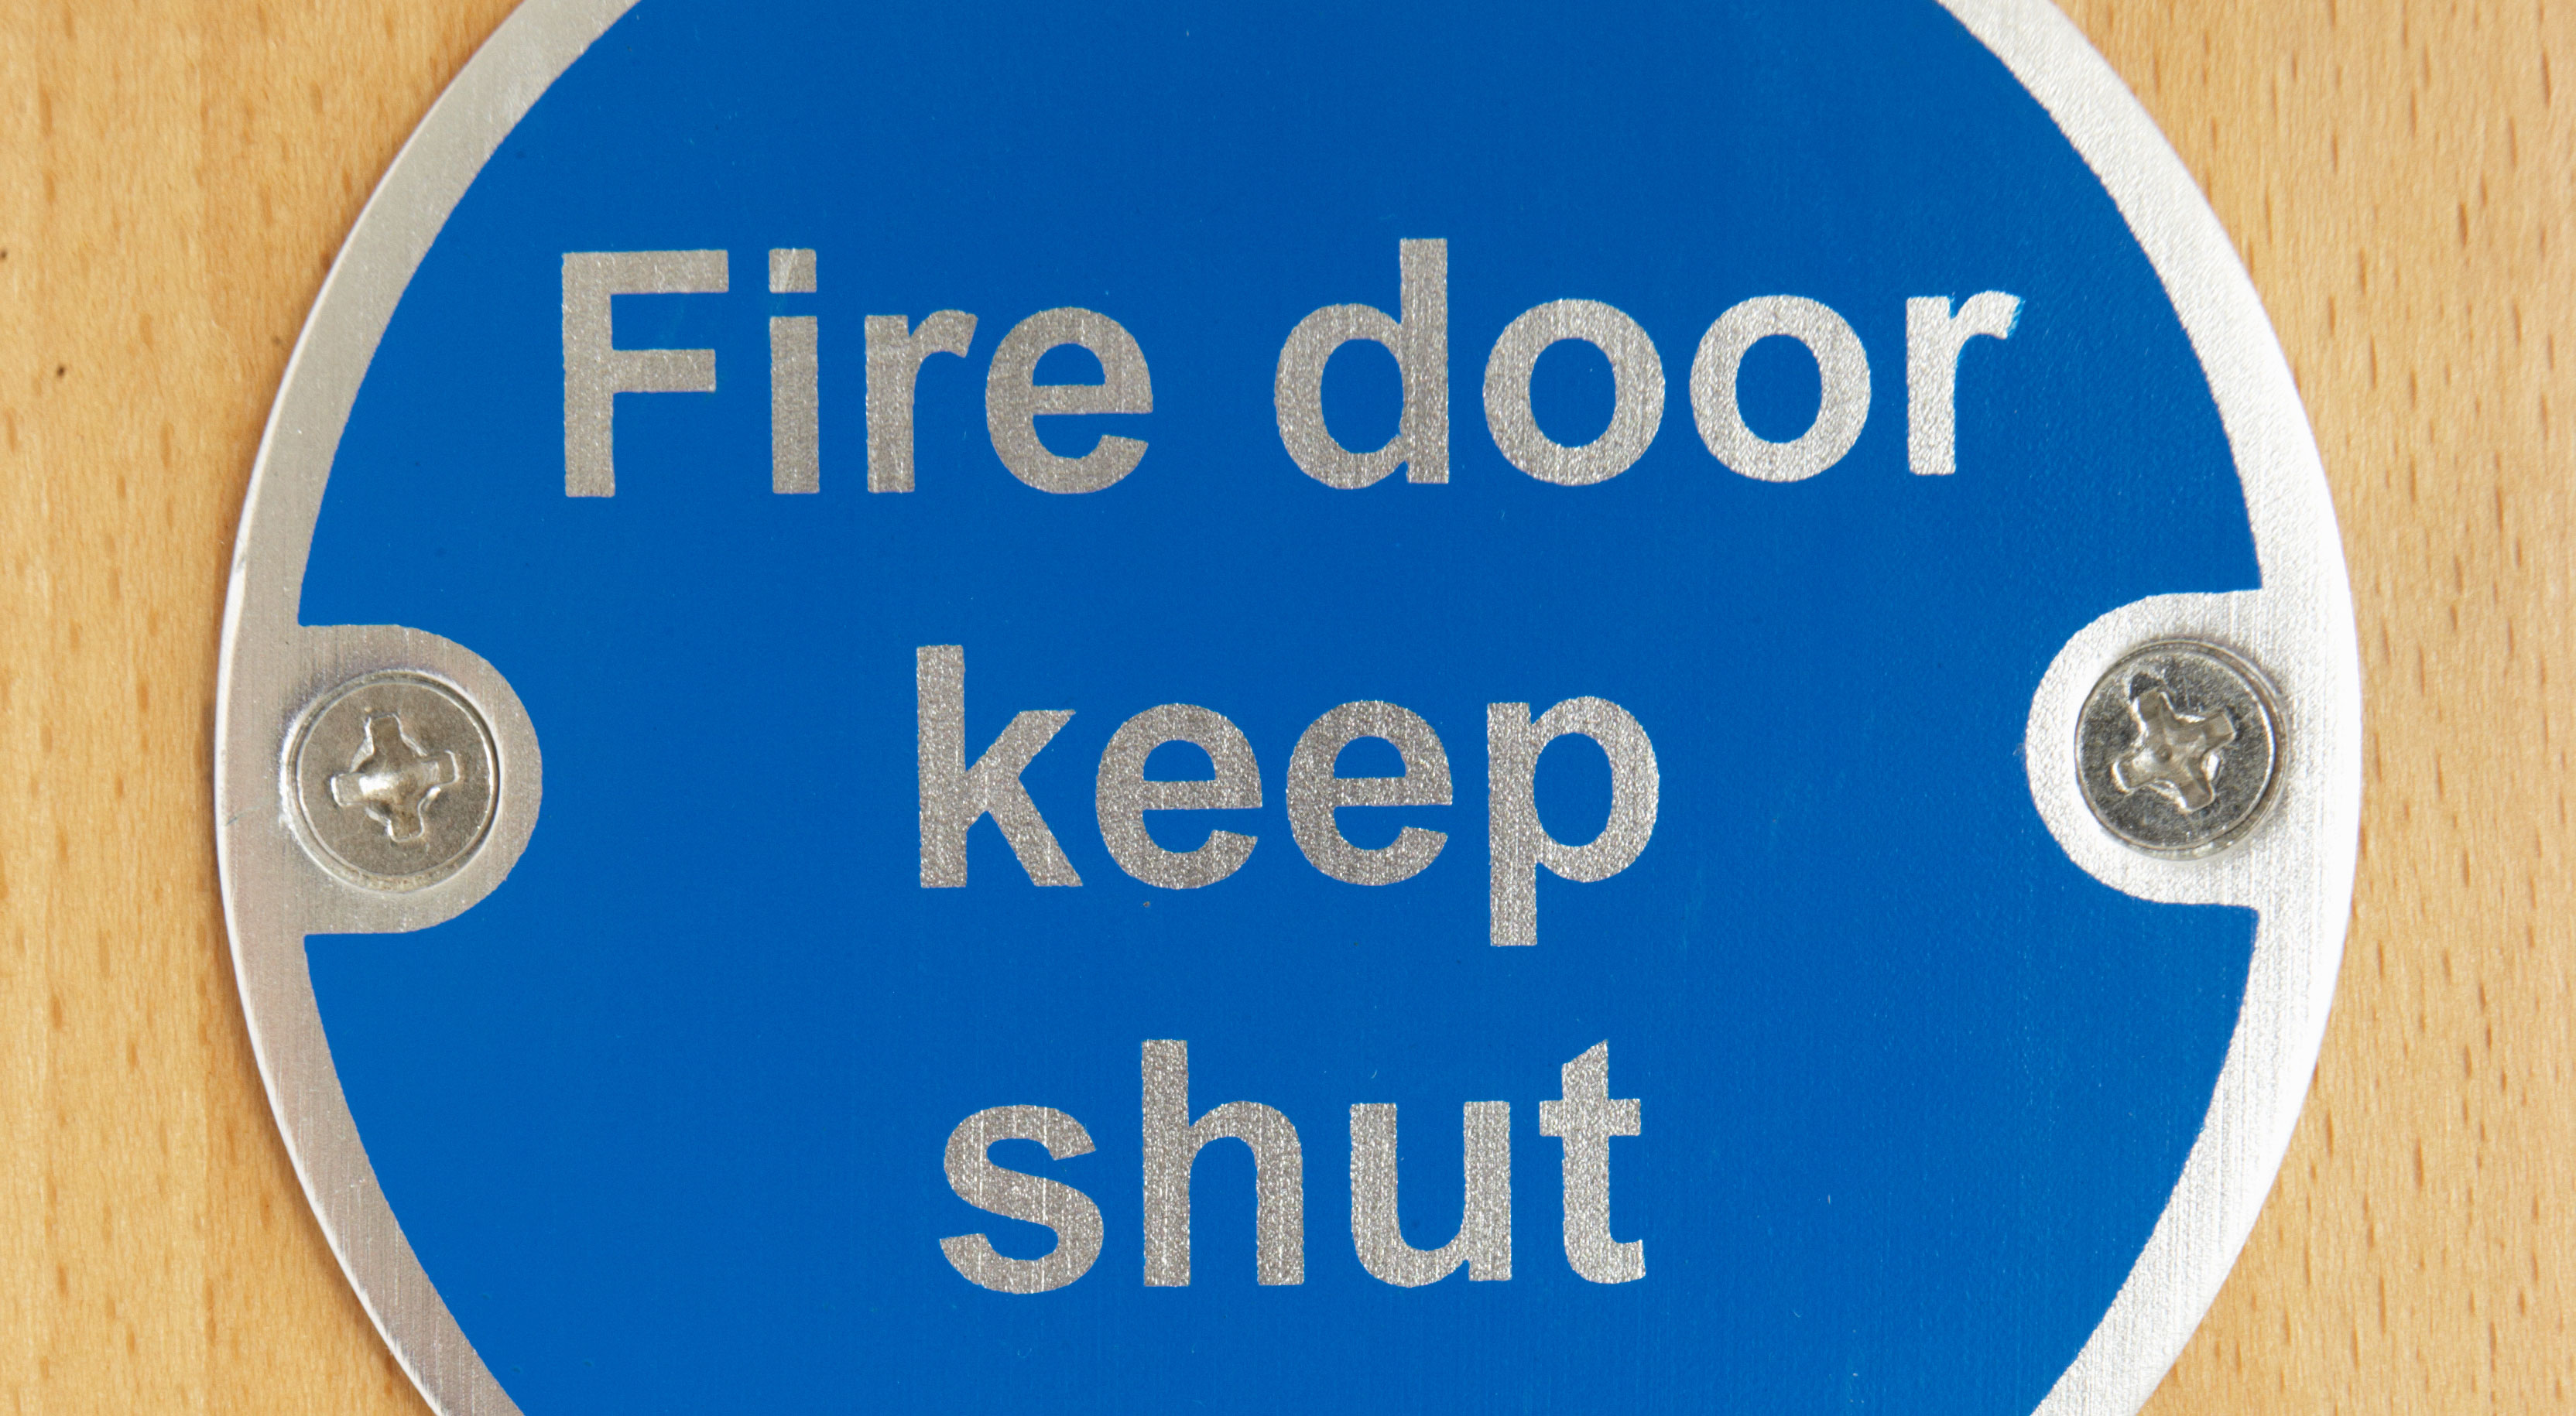 Fire doors with keep shut sign